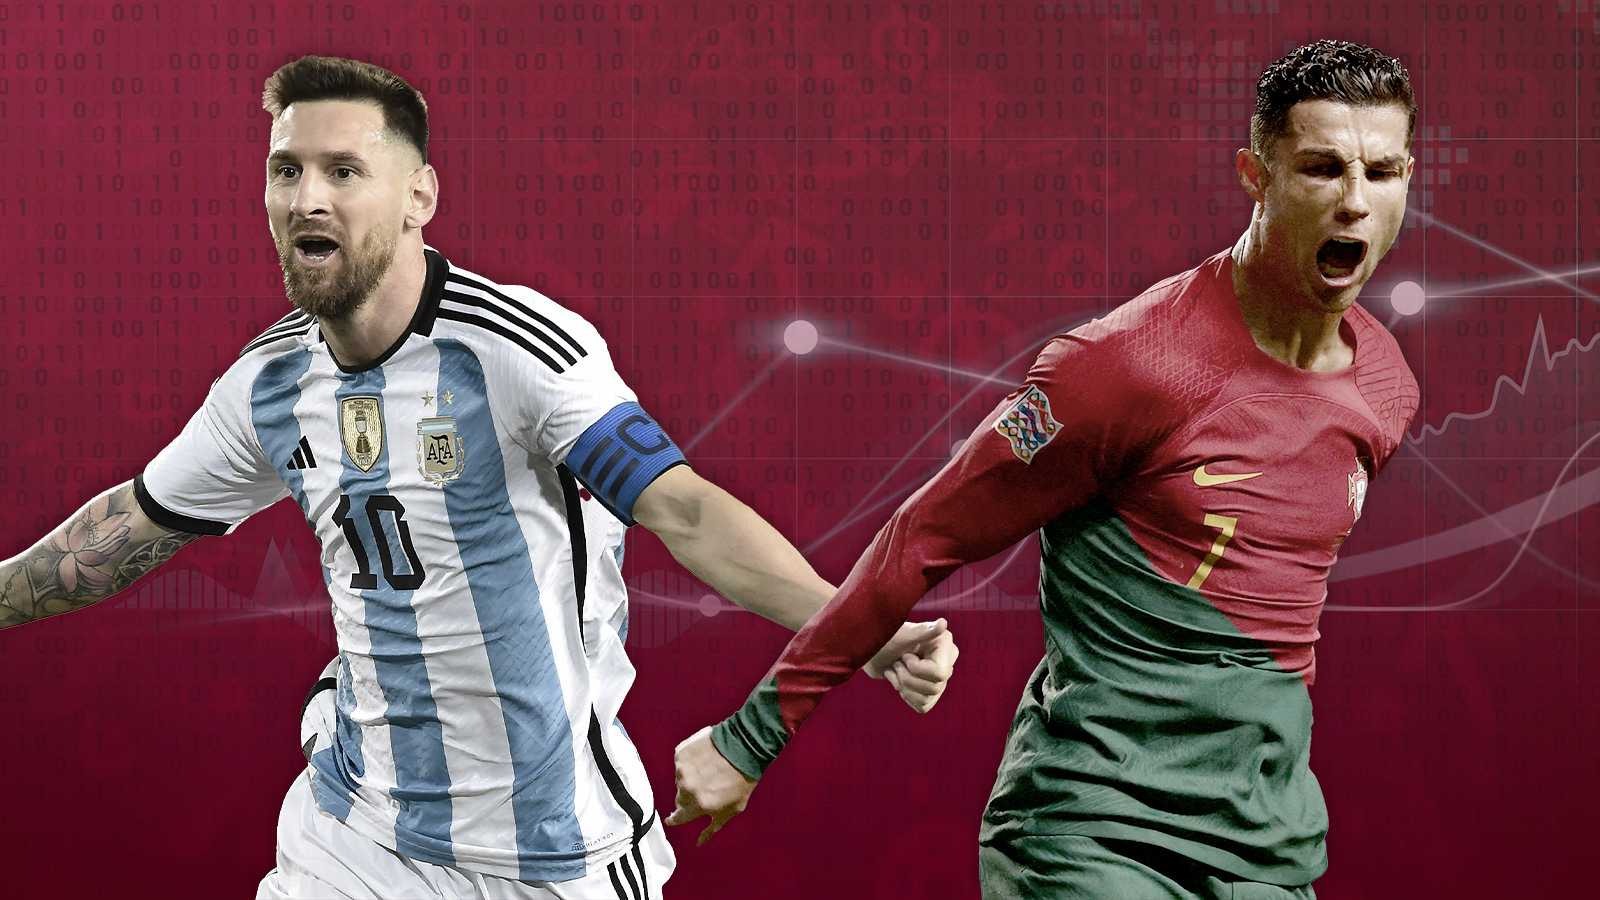 Tất tần tật thống kê của Messi và Ronaldo: Cầu thủ vĩ đại nhất lịch sử lộ diện? - Ảnh 1.